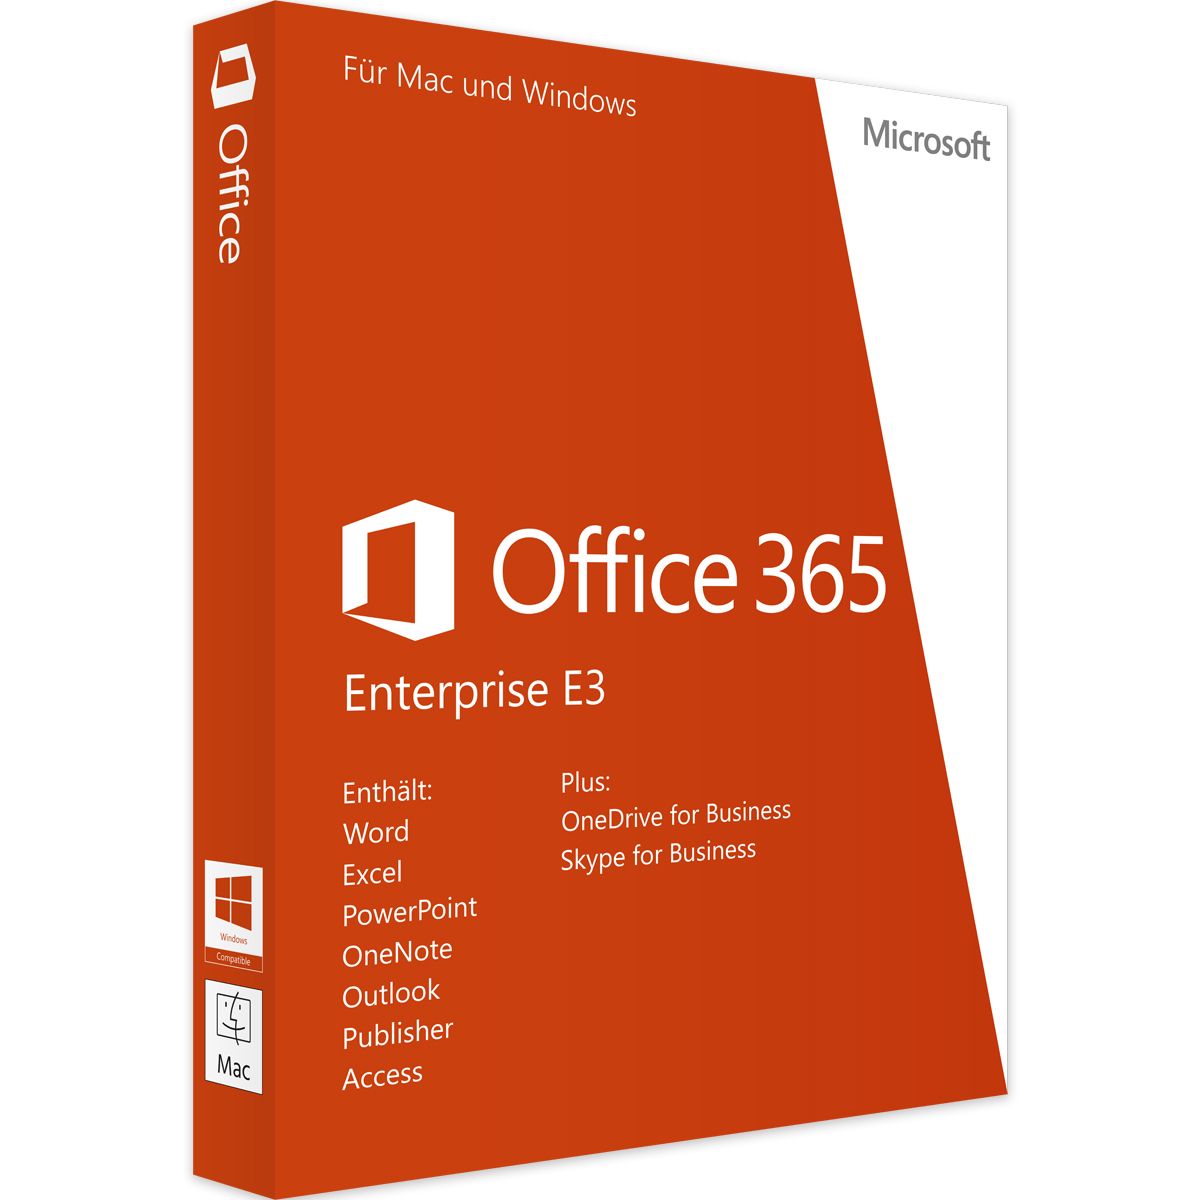 Microsoft Office 365 Enterprise E3, 1 Jaar(PCs, MACs, Tabletten, Telefoons) 1 gebruiker